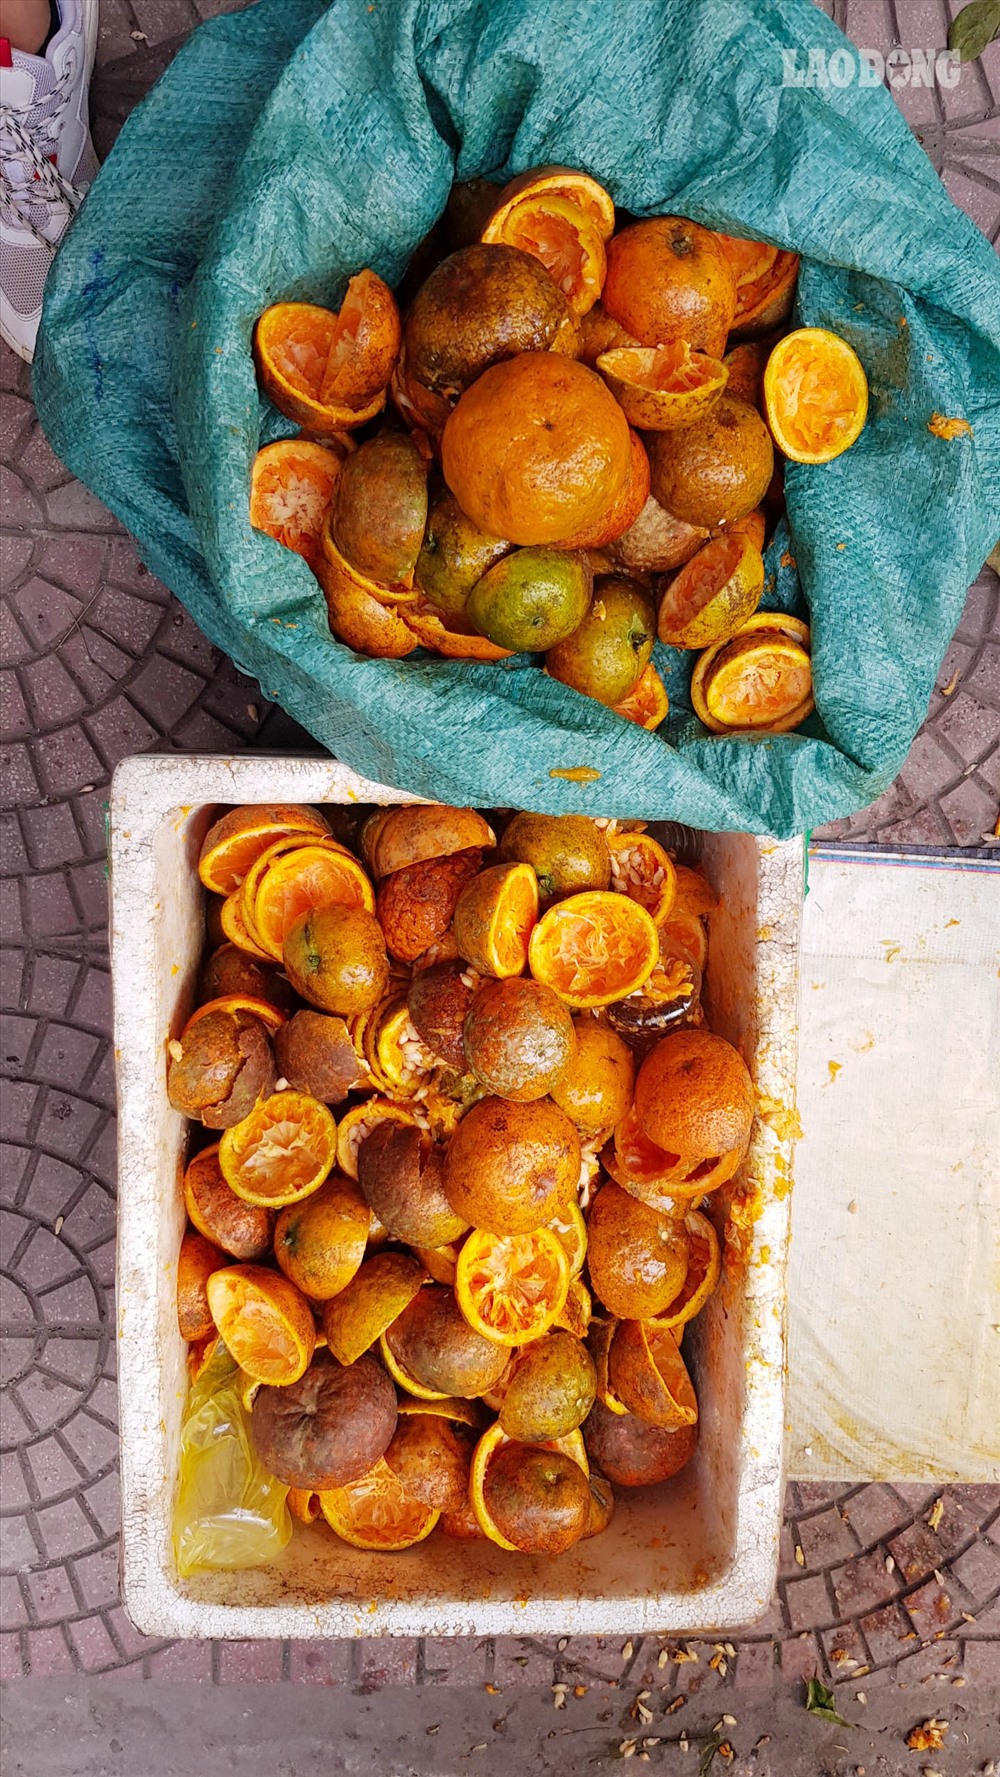 Ngoài bán được nước cam, vỏ cam được các nông dân ở Hưng Yêu thu mua về làm phân bón cho cây trồng.